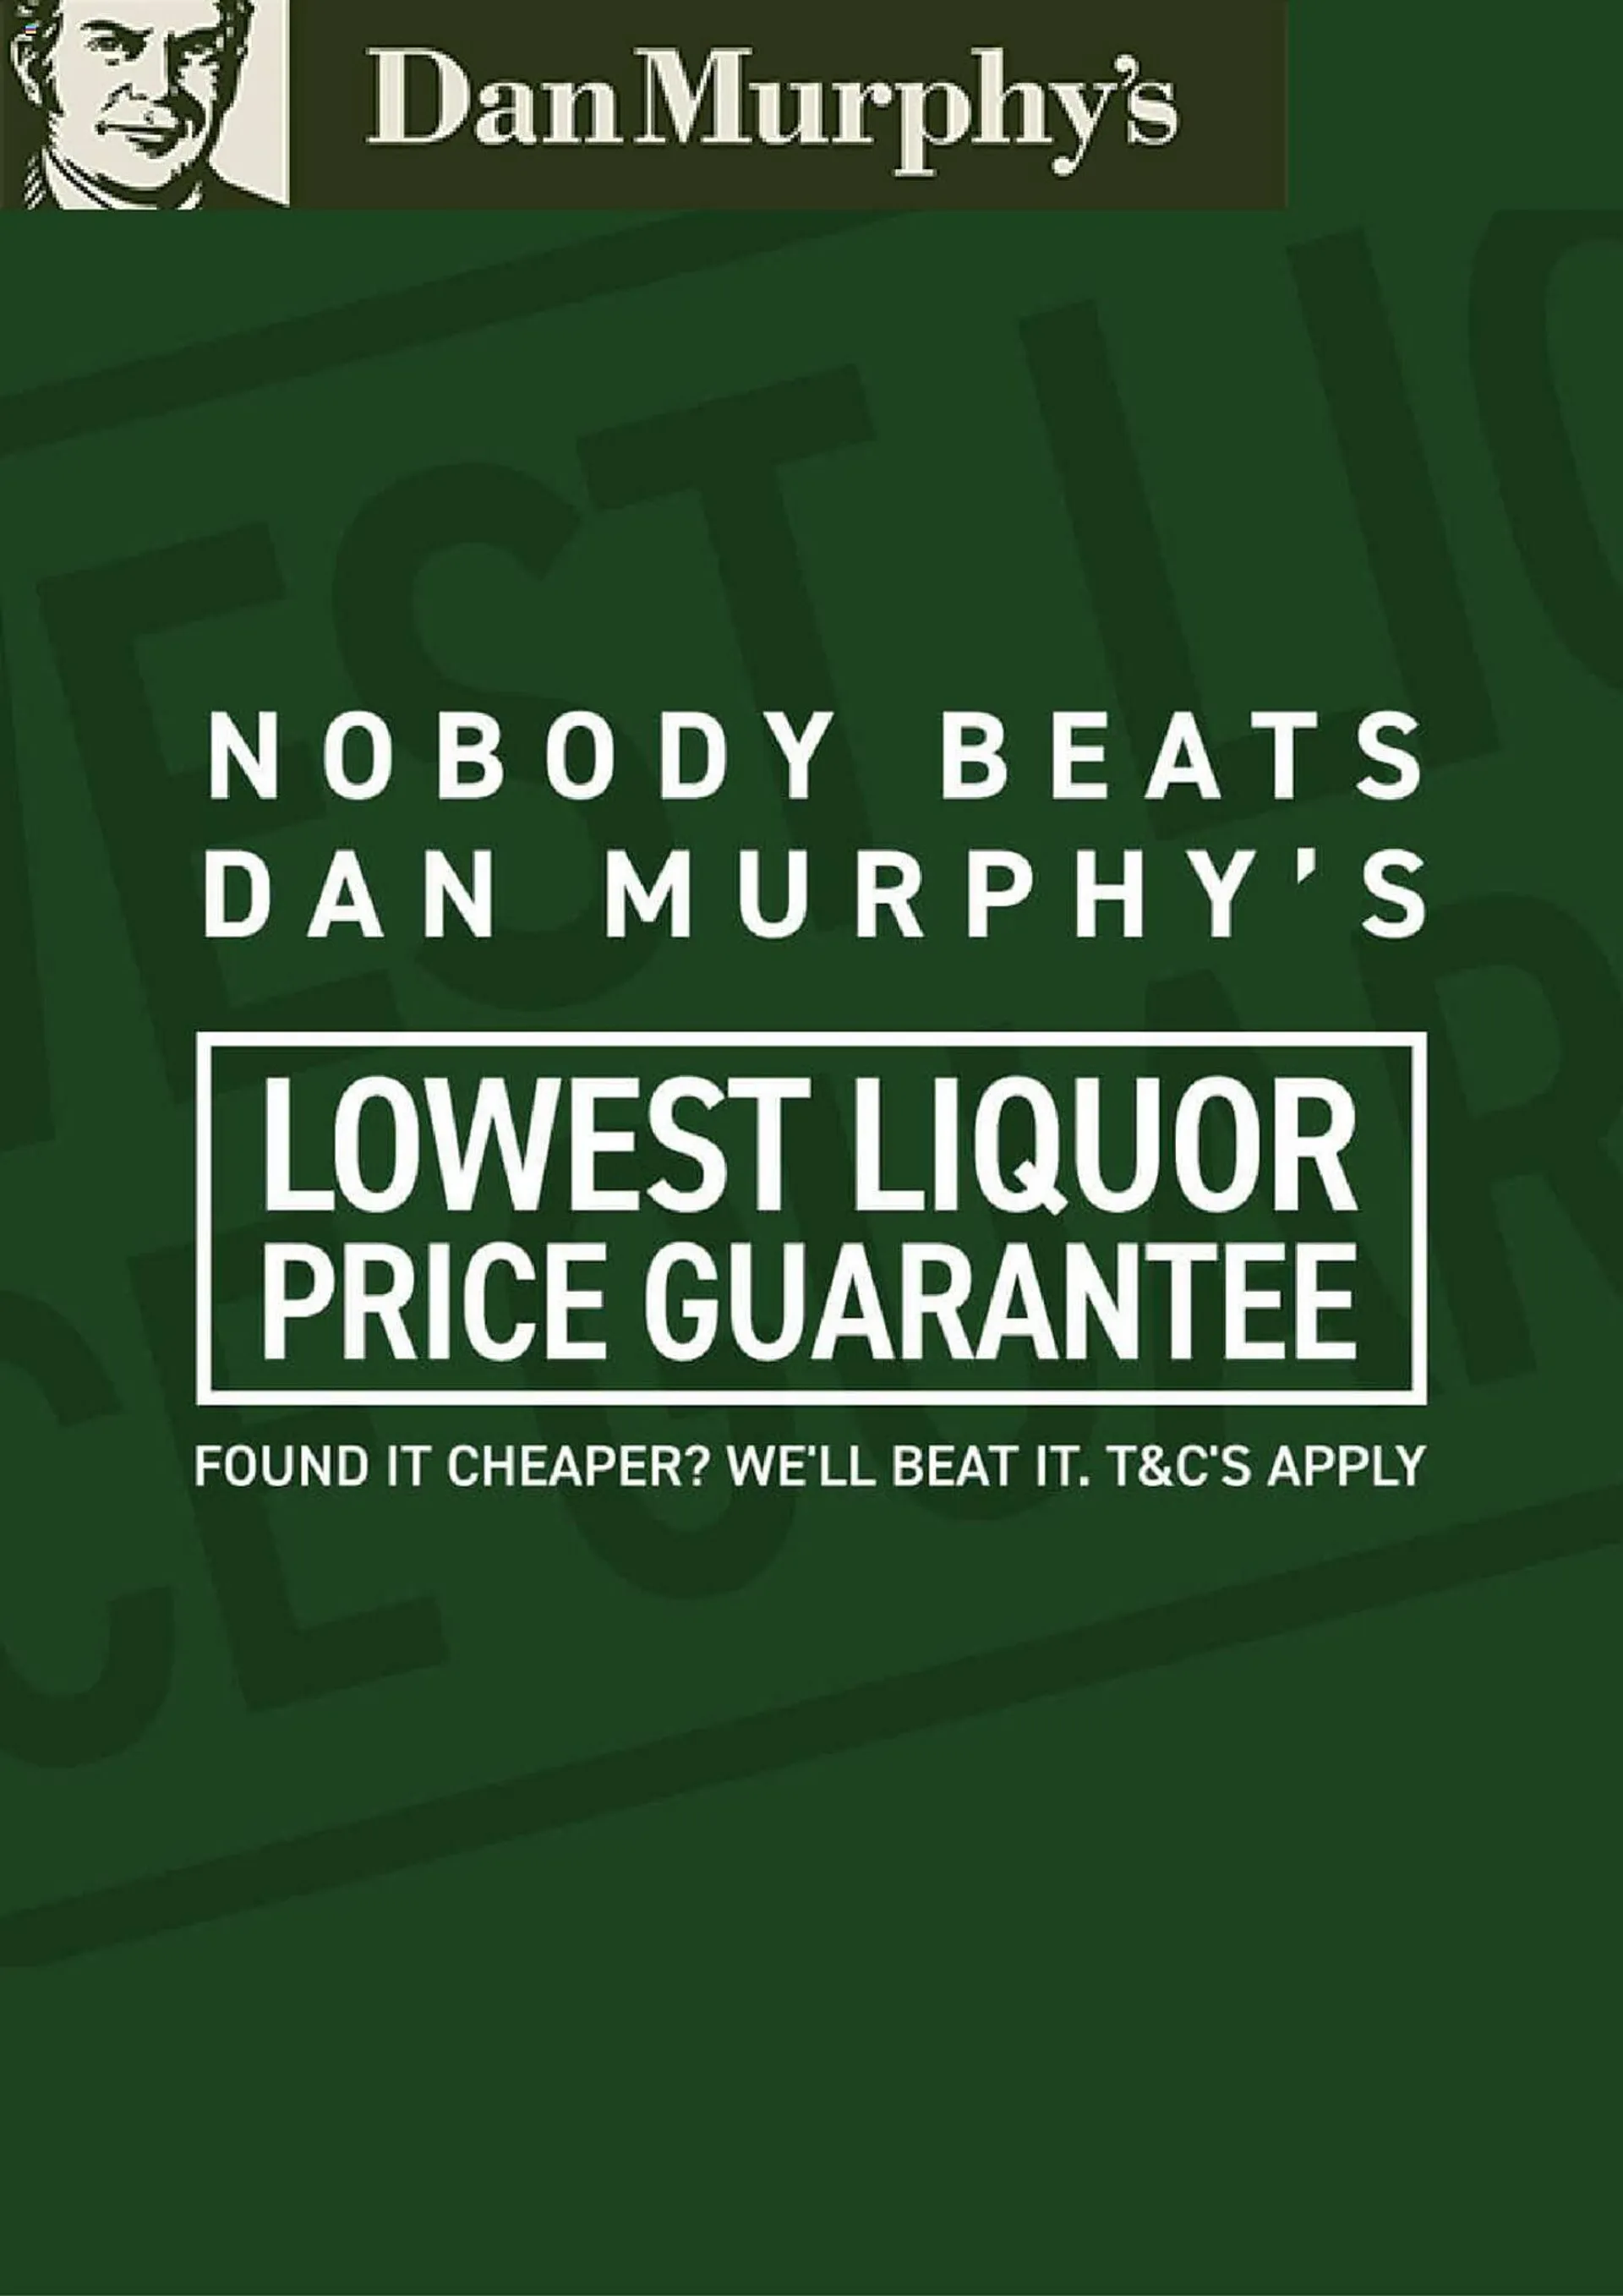 Dan Murphys catalogue - 1